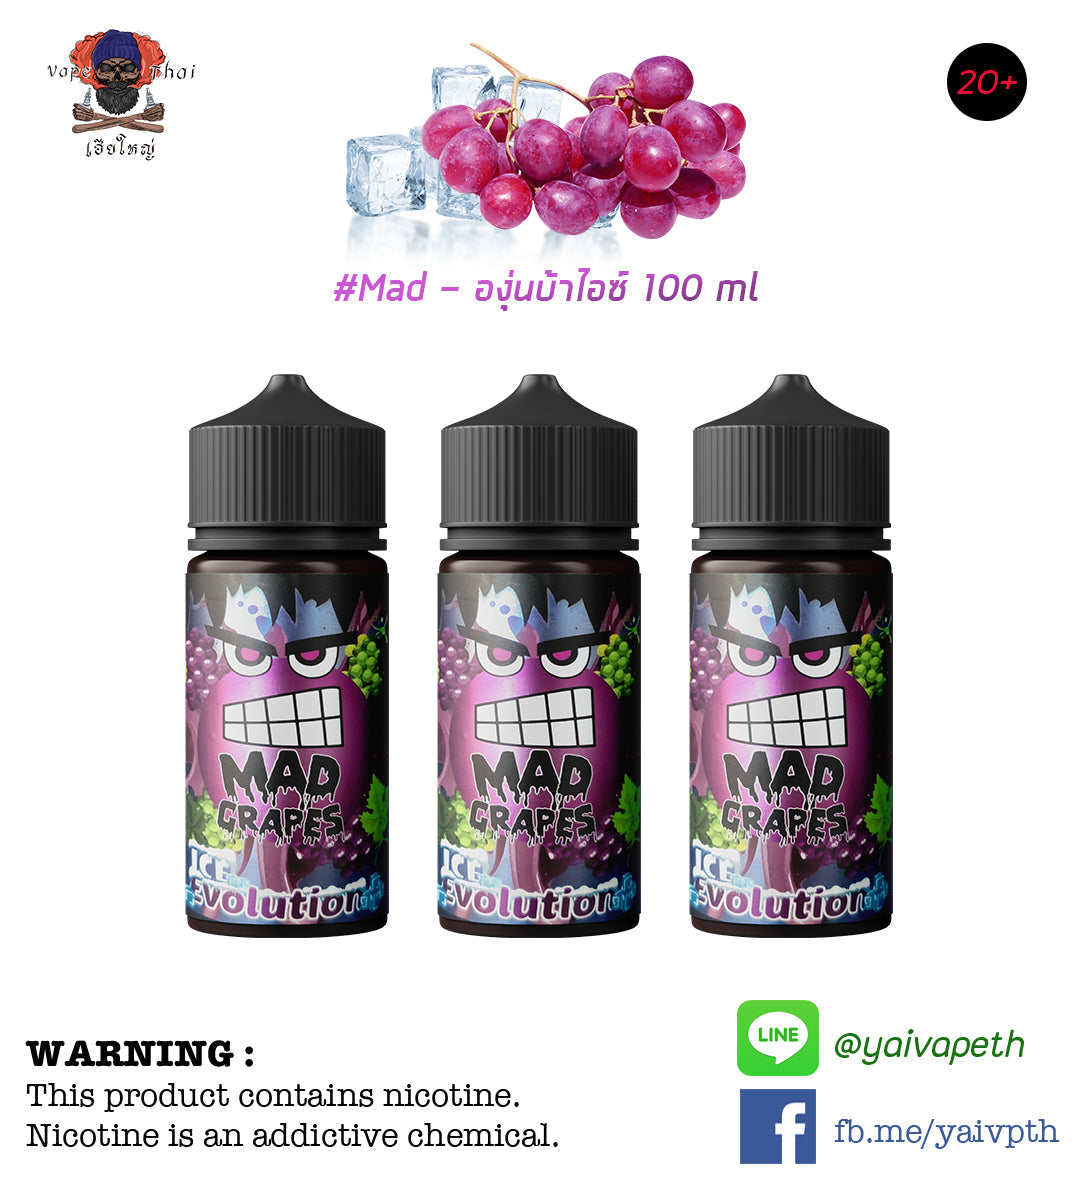 องุ่นบ้าไอซ์ - น้ำยาบุหรี่ไฟฟ้า Mad Grape Ice Evolution 100 ml (มาเลเซีย) - YAIVAPETHAI  No.1